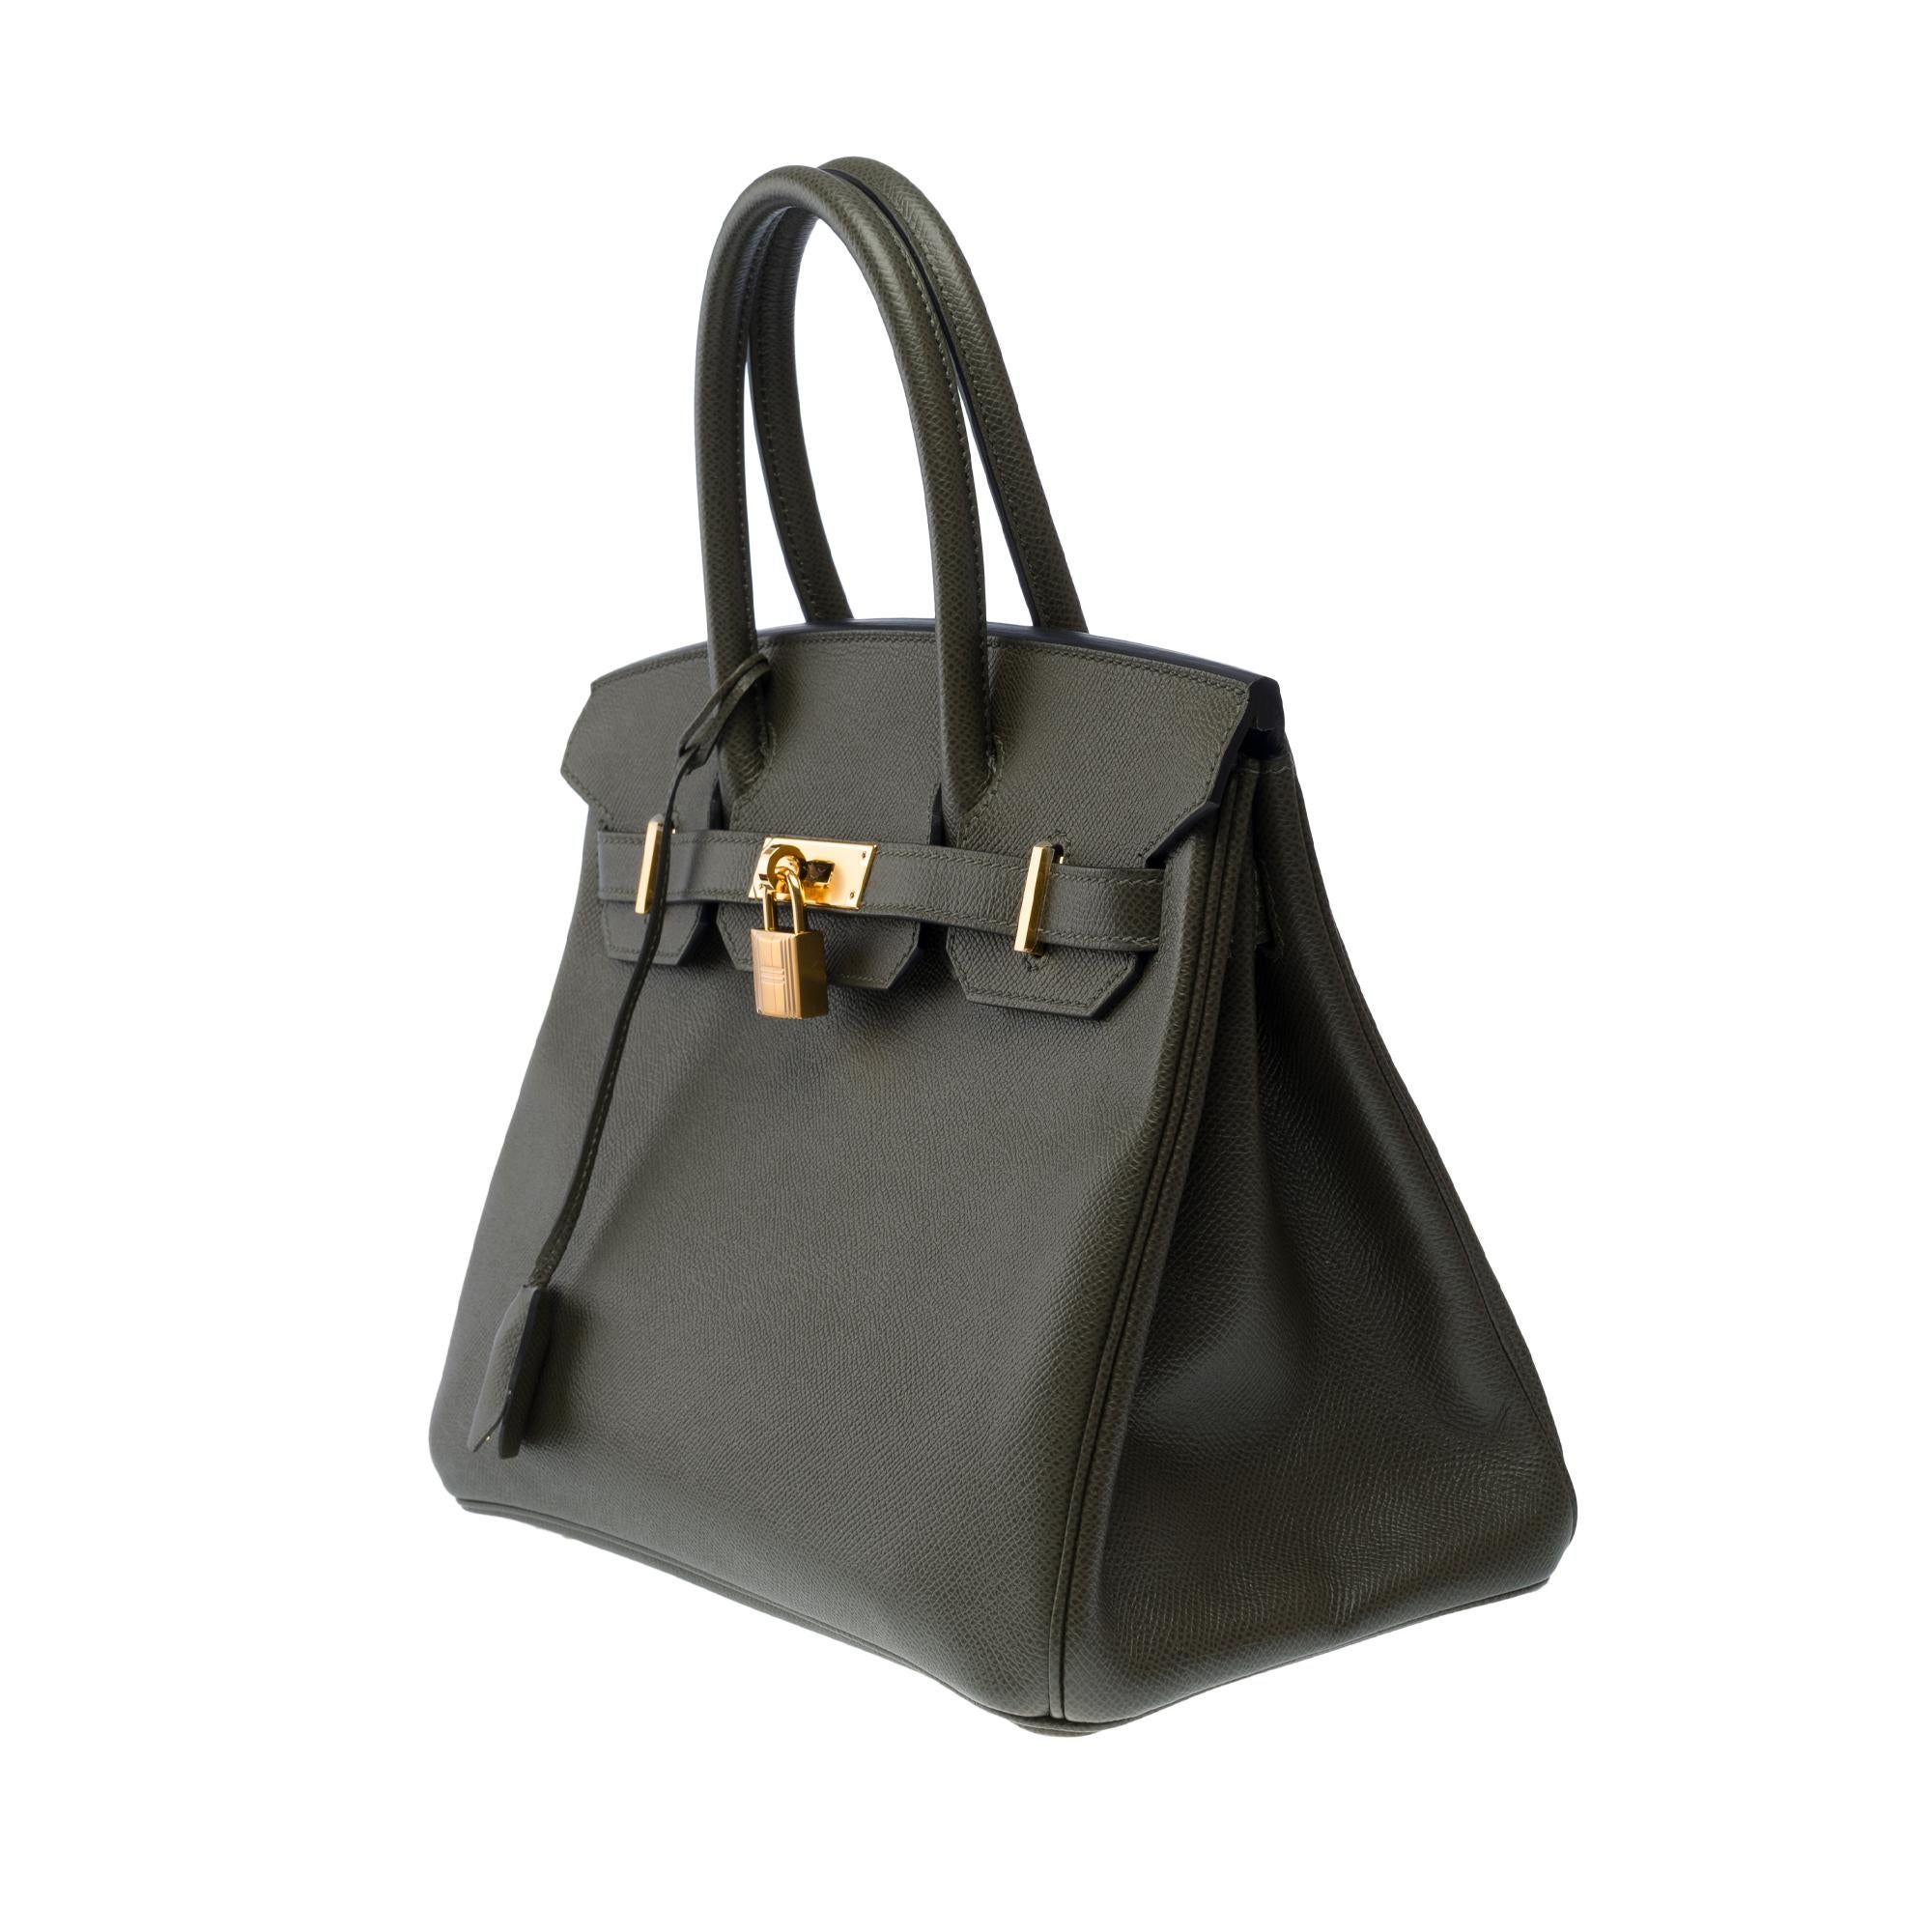 Women's Splendid Hermes Birkin 30 handbag in Vert de Gris Epsom leather, SHW For Sale